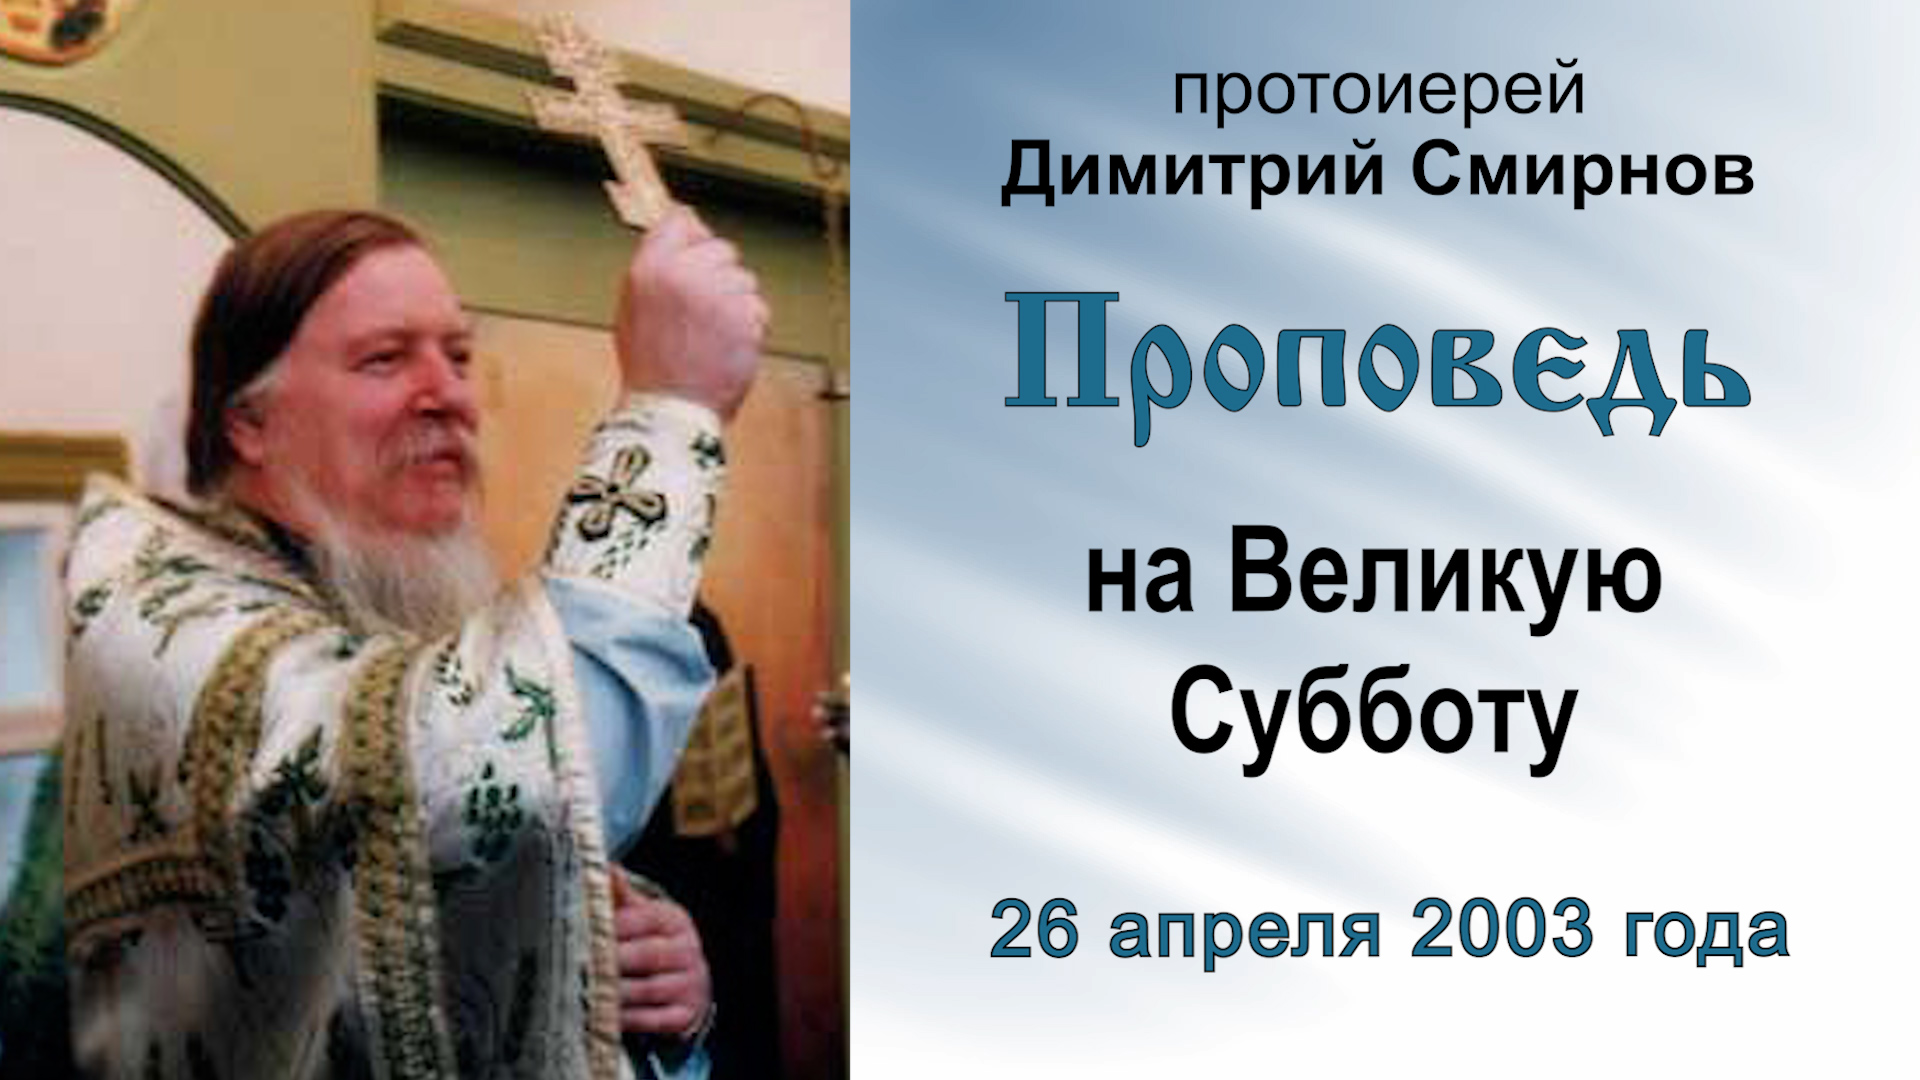 Проповедь на Великую Субботу (2003.04.26). Протоиерей Димитрий Смирнов